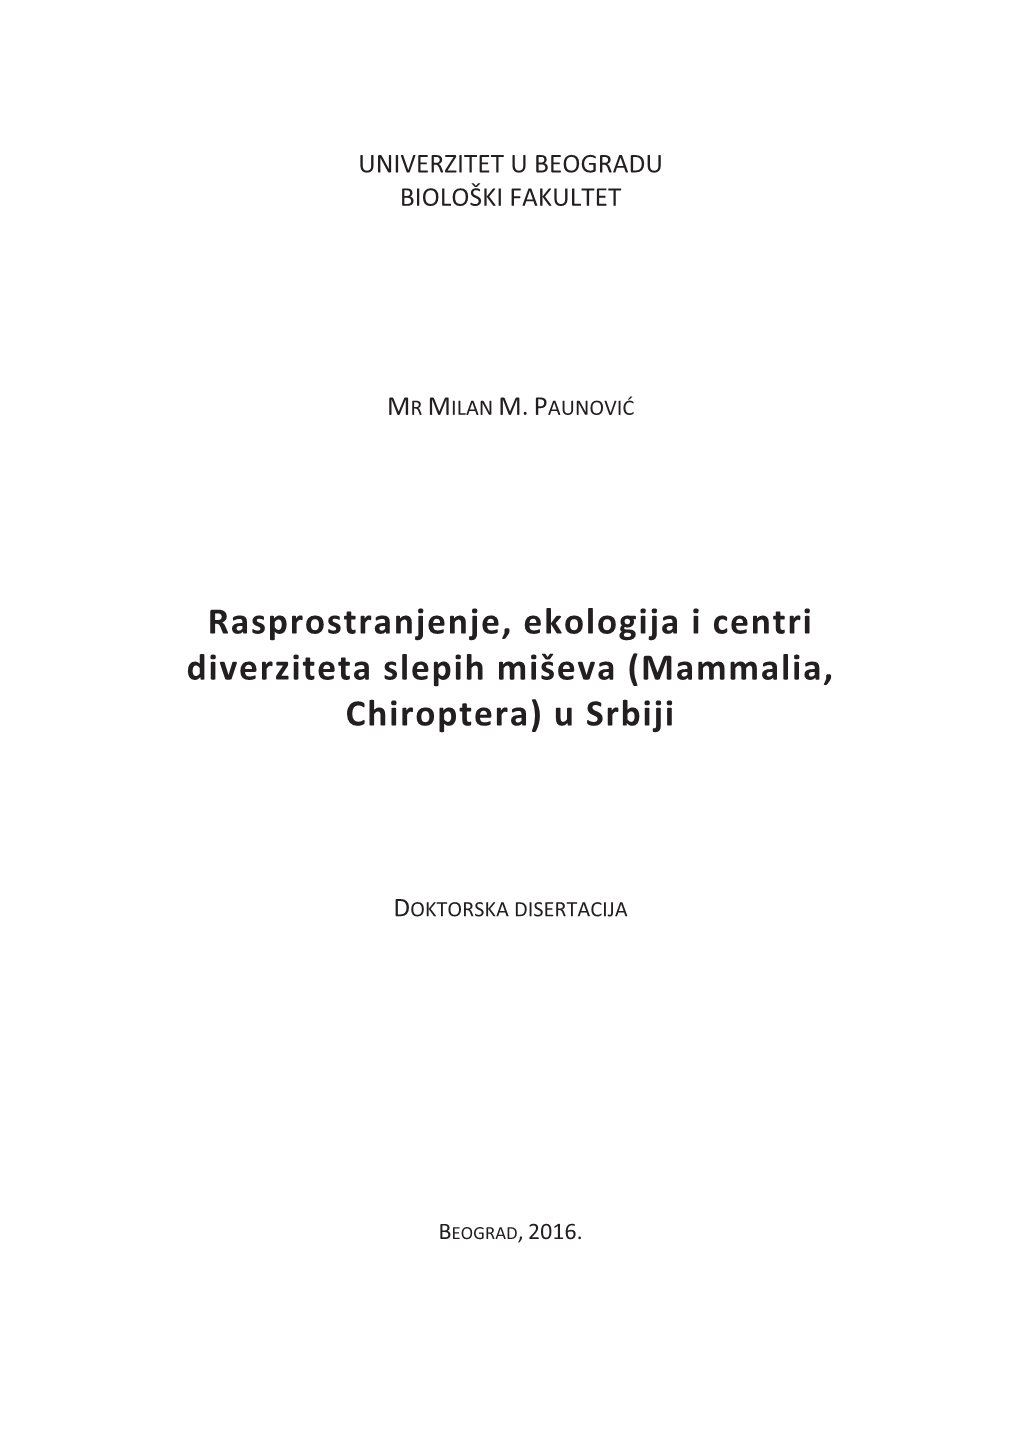 Rasprostranjenje, Ekologija I Centri Diverziteta Slepih Miševa (Mammalia, Chiroptera) U Srbiji